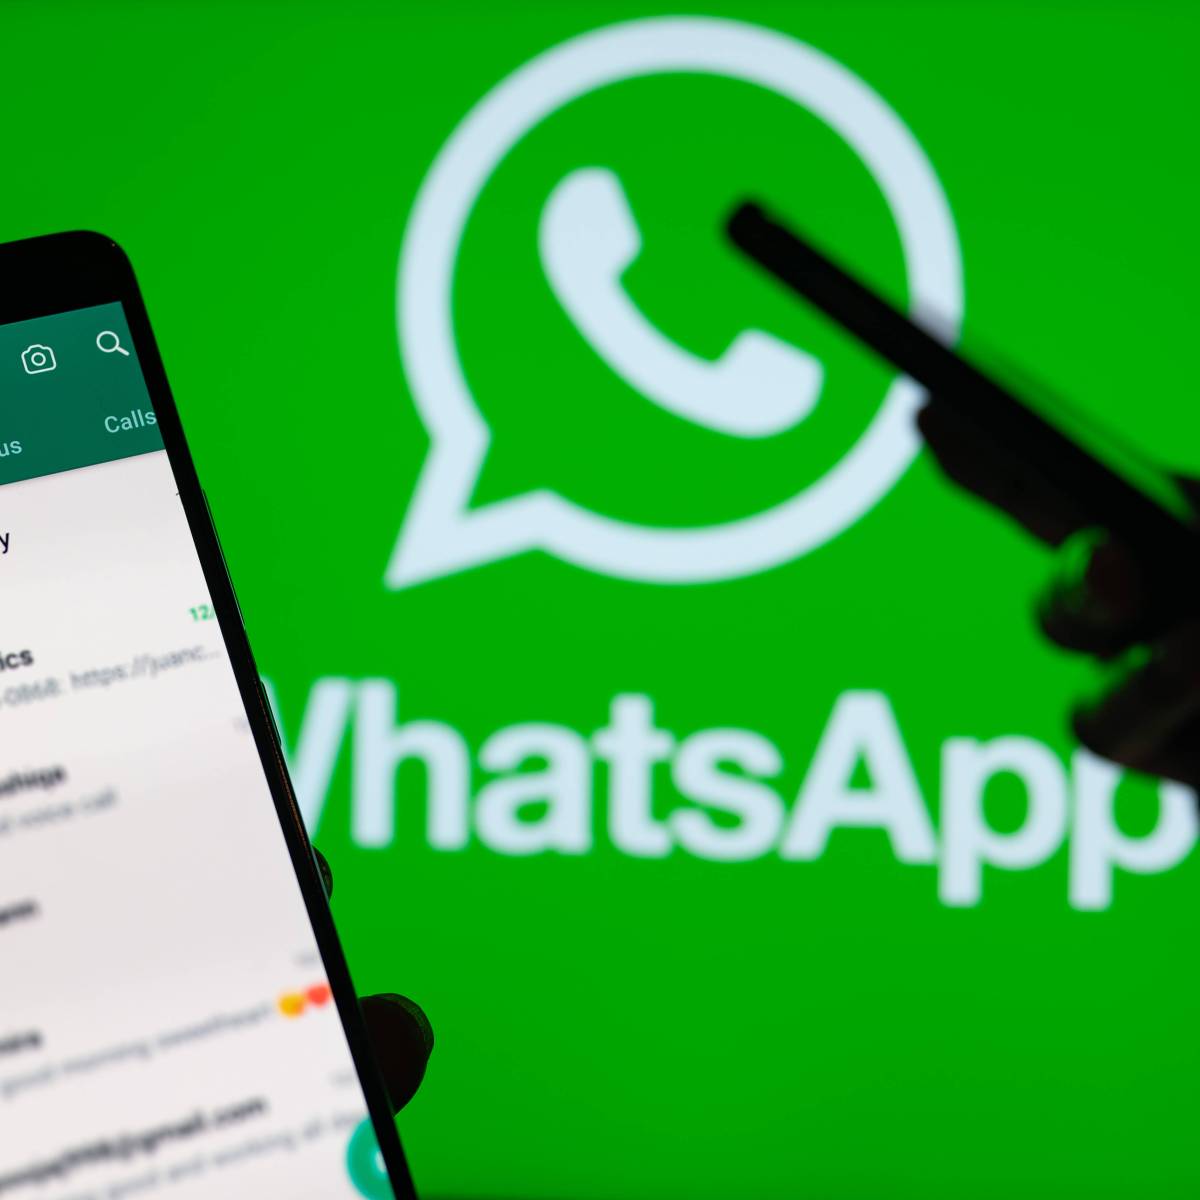 Whatsapp-Kunden wegen dieses Symbols plötzlich verdutzt – das steckt dahinter